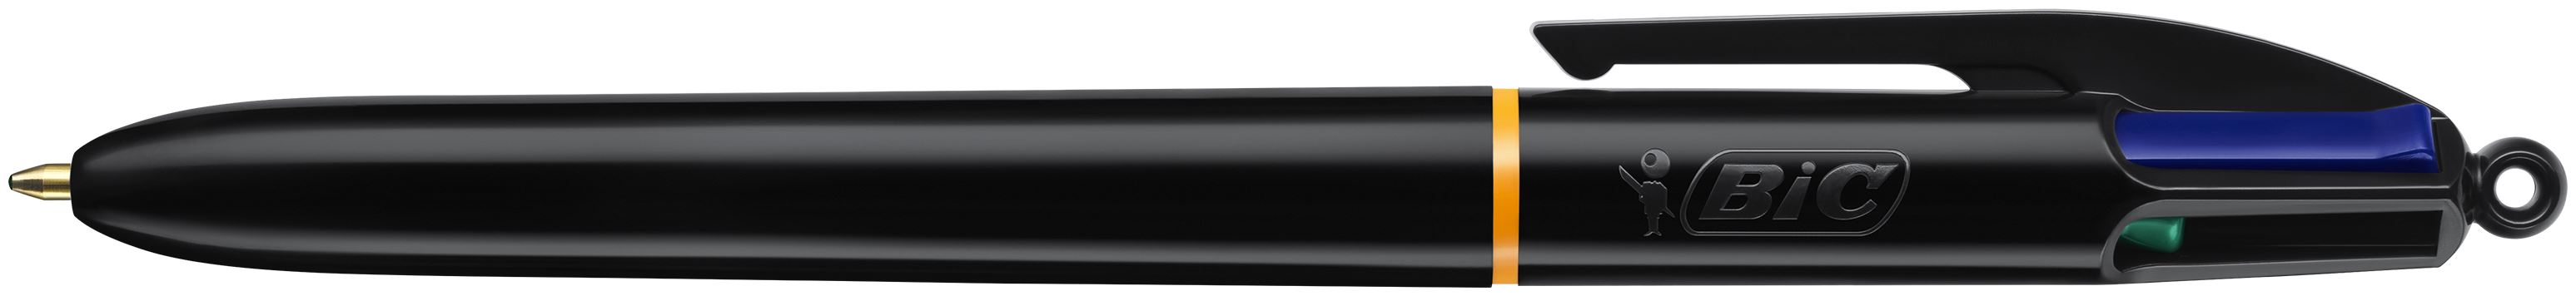 Bic 4 Colours Pro Ballpoint Pen 1mm Tip 0.32mm Line Black Barrel Black/Blue/Green/Red Ink (Pack 12)